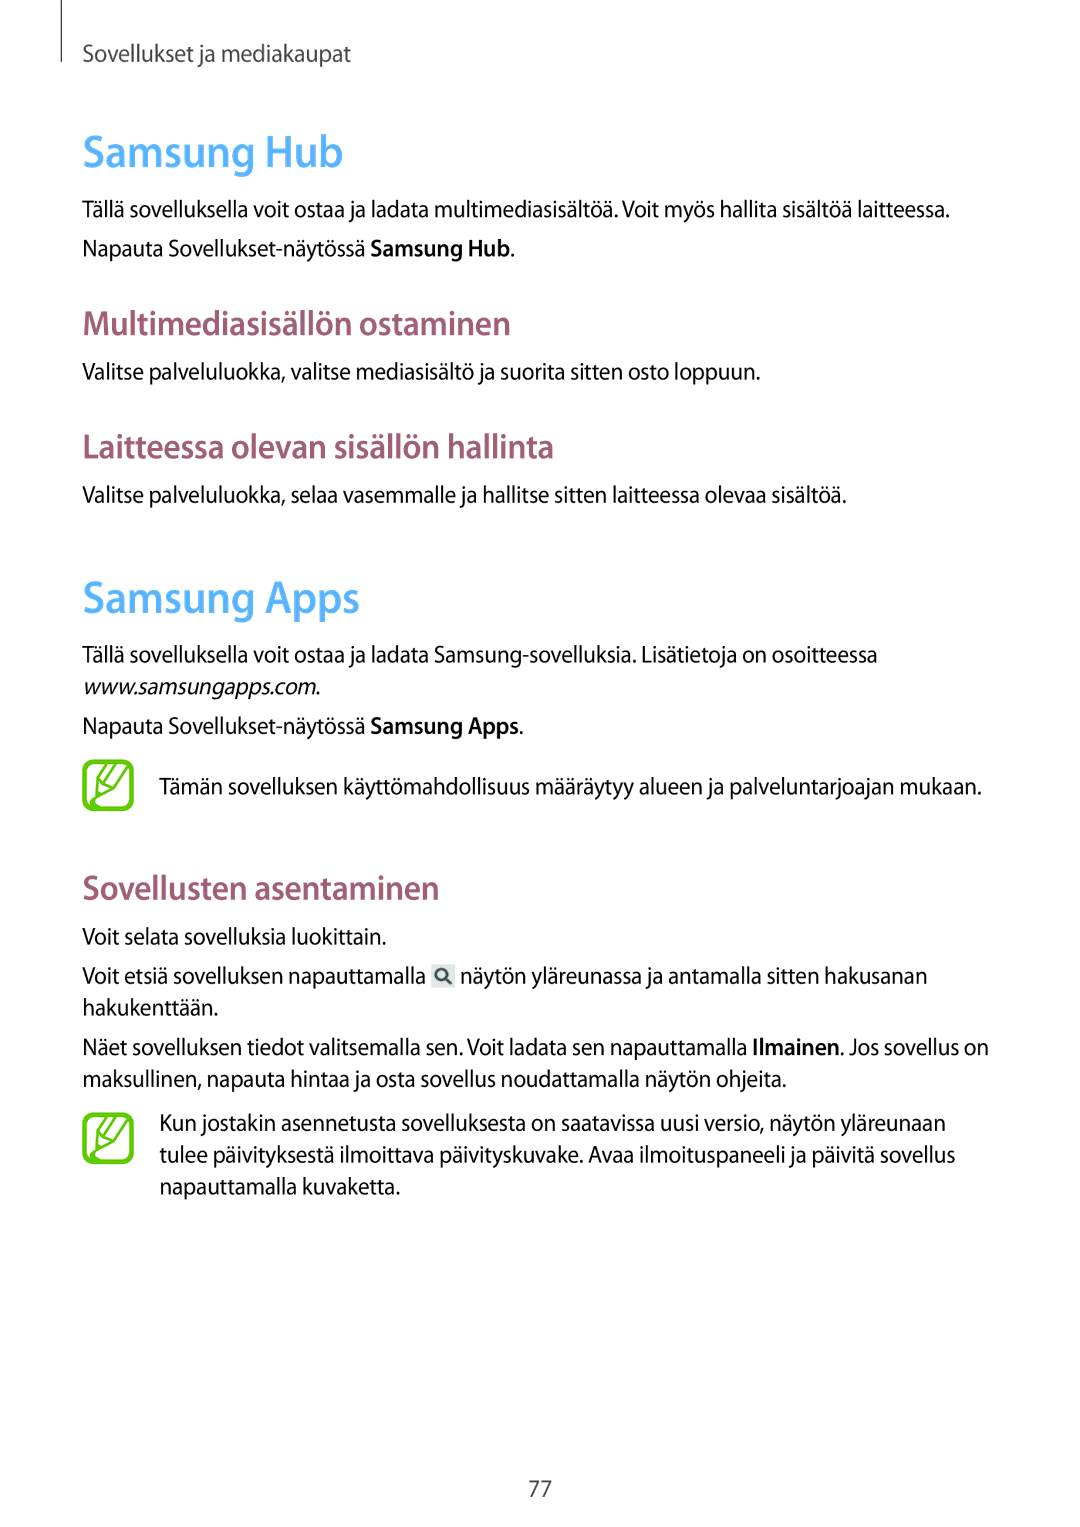 Samsung SM-G3815HKANEE manual Samsung Hub, Samsung Apps, Multimediasisällön ostaminen, Laitteessa olevan sisällön hallinta 